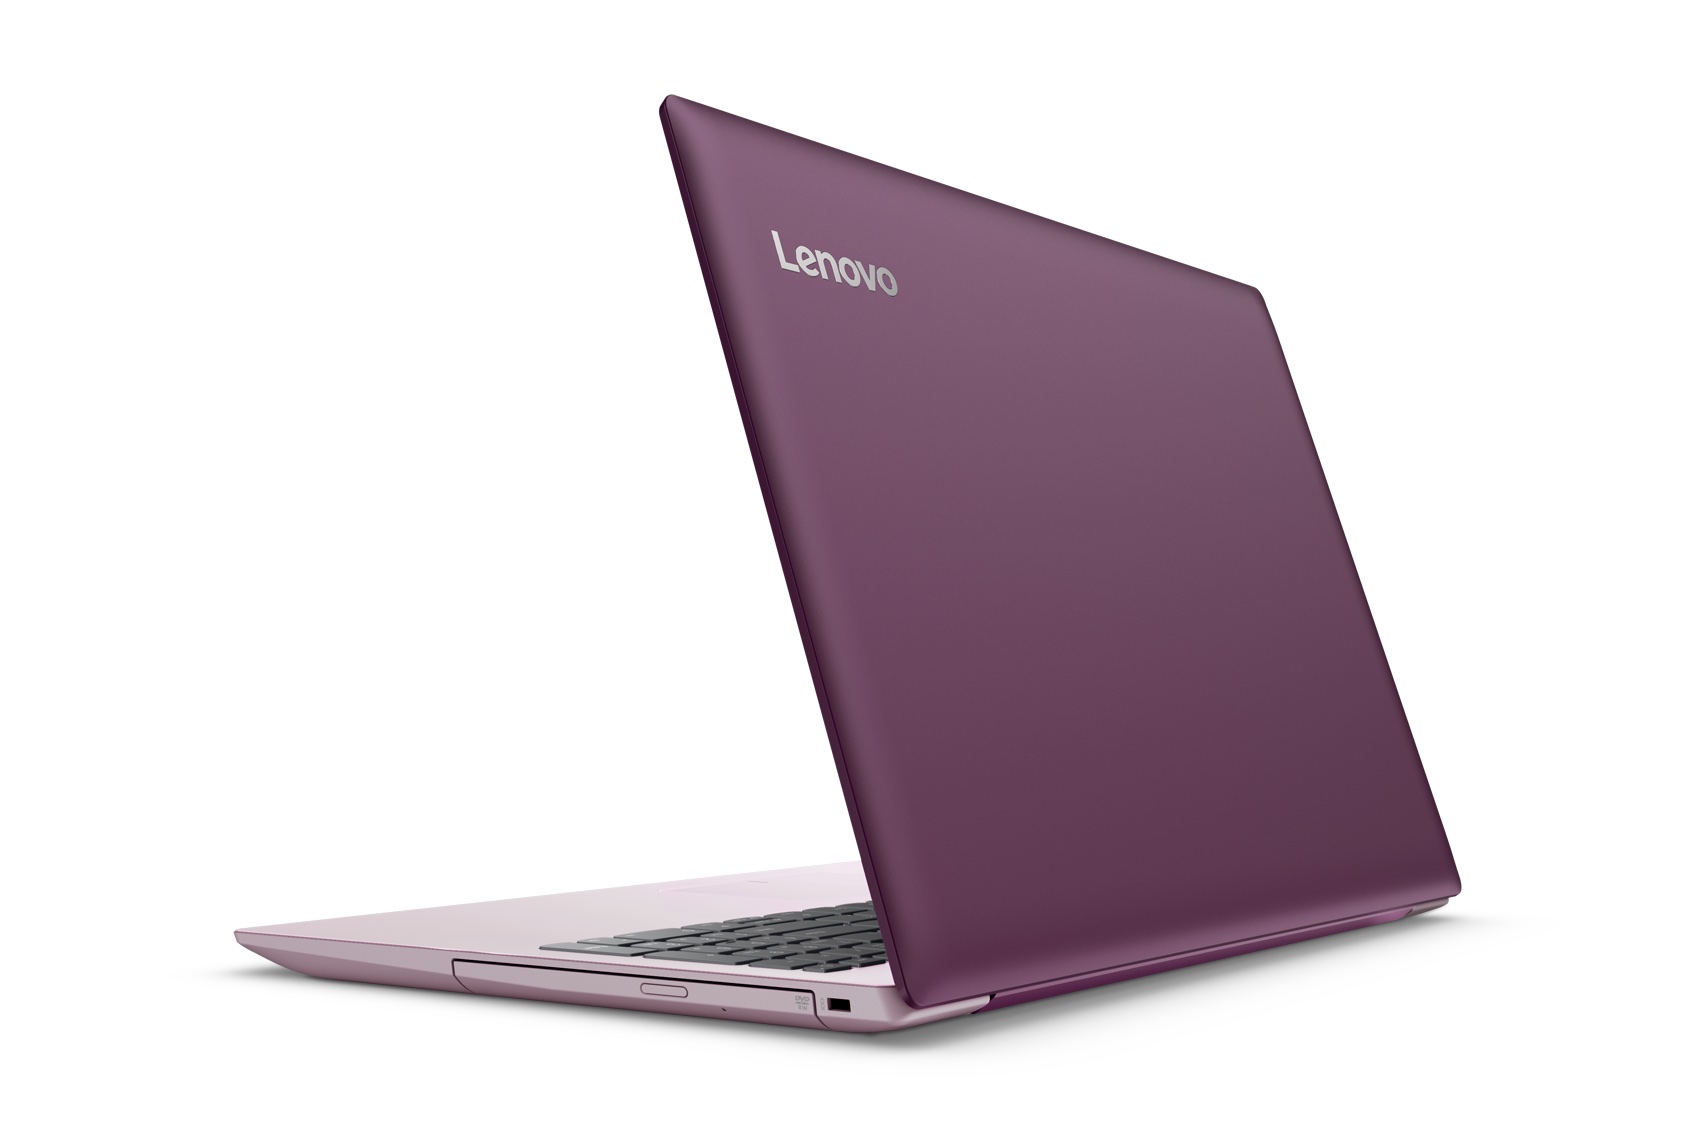 Lenovo представила новые ноутбуки: яркие и «безрамочные» IdeaPad, игровой Legion Y920 с пометкой VR Ready и трансформирумый Flex 5 с откидывающимся на 360° экраном